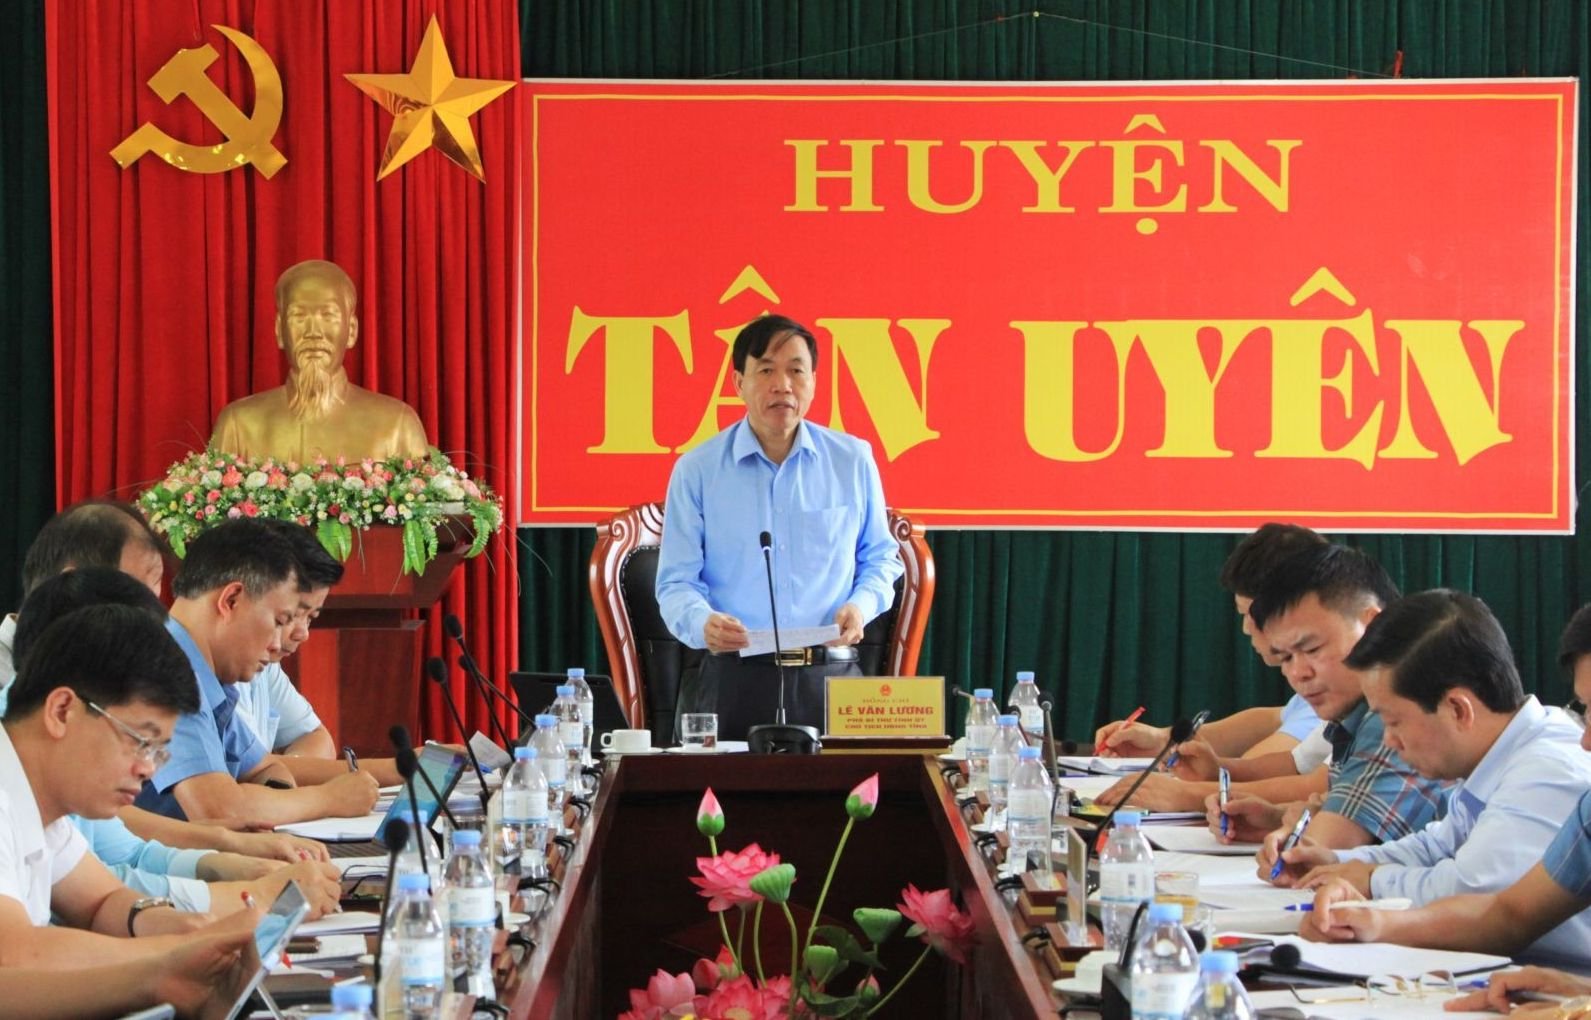 Chủ tịch UBND tỉnh Lai Châu Lê Văn Lương phát biểu tại buổi làm việc với huyện Tân Uyên. Ảnh: C.N.